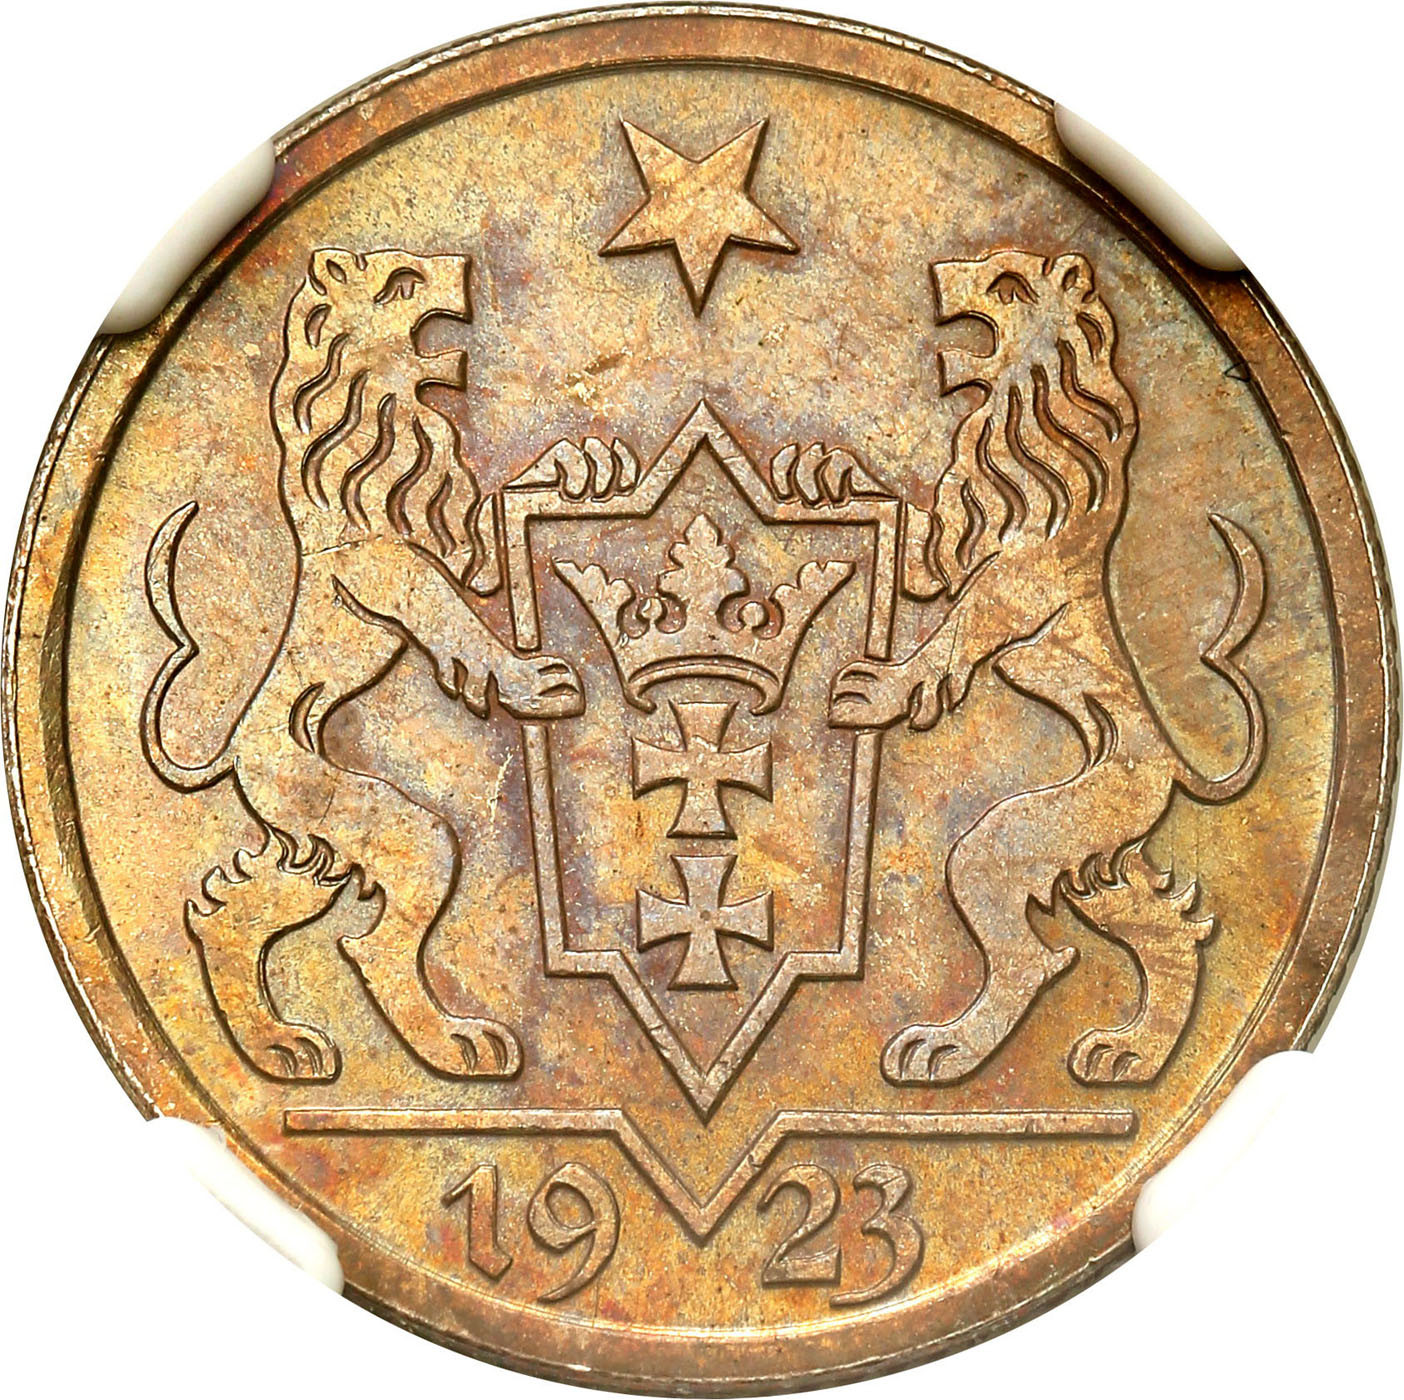 Wolne Miasto Gdańsk/Danzig 1 Gulden 1923 NGC MS63 - PIĘKNY